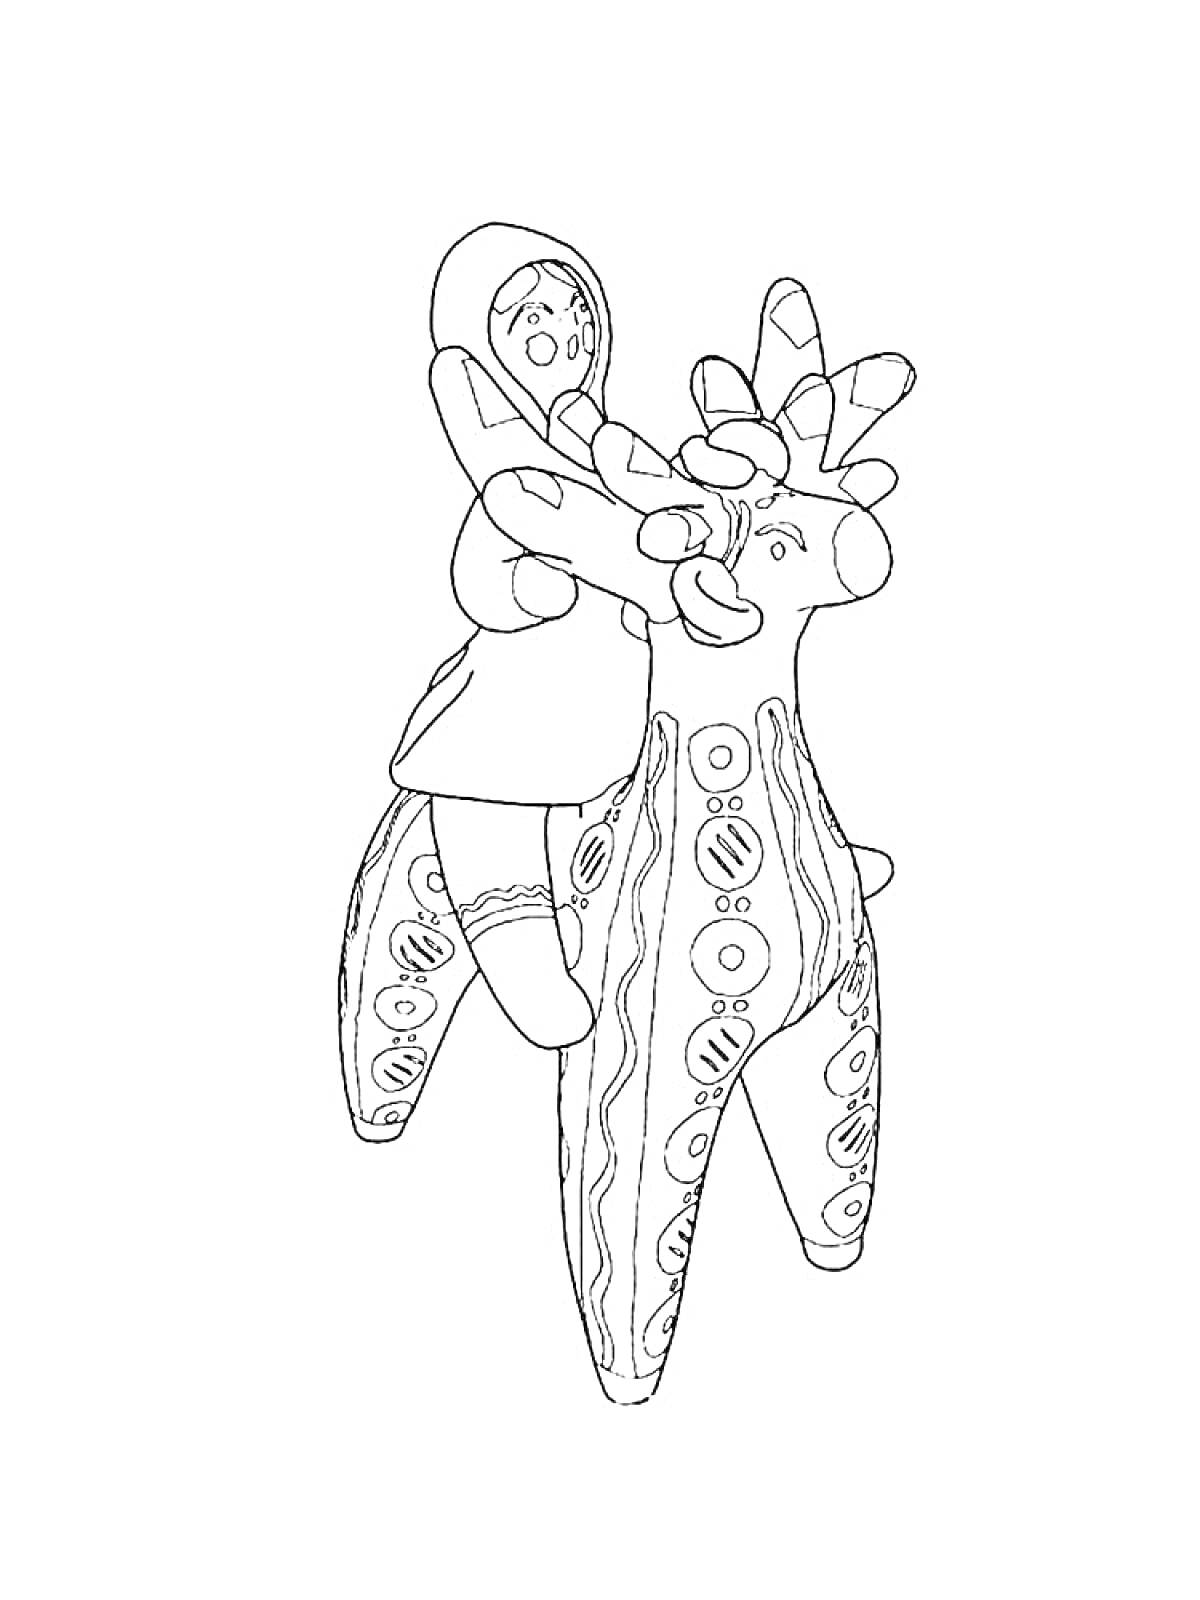 Раскраска Фигурка всадника на лошади с орнаментом в стиле дымковской игрушки